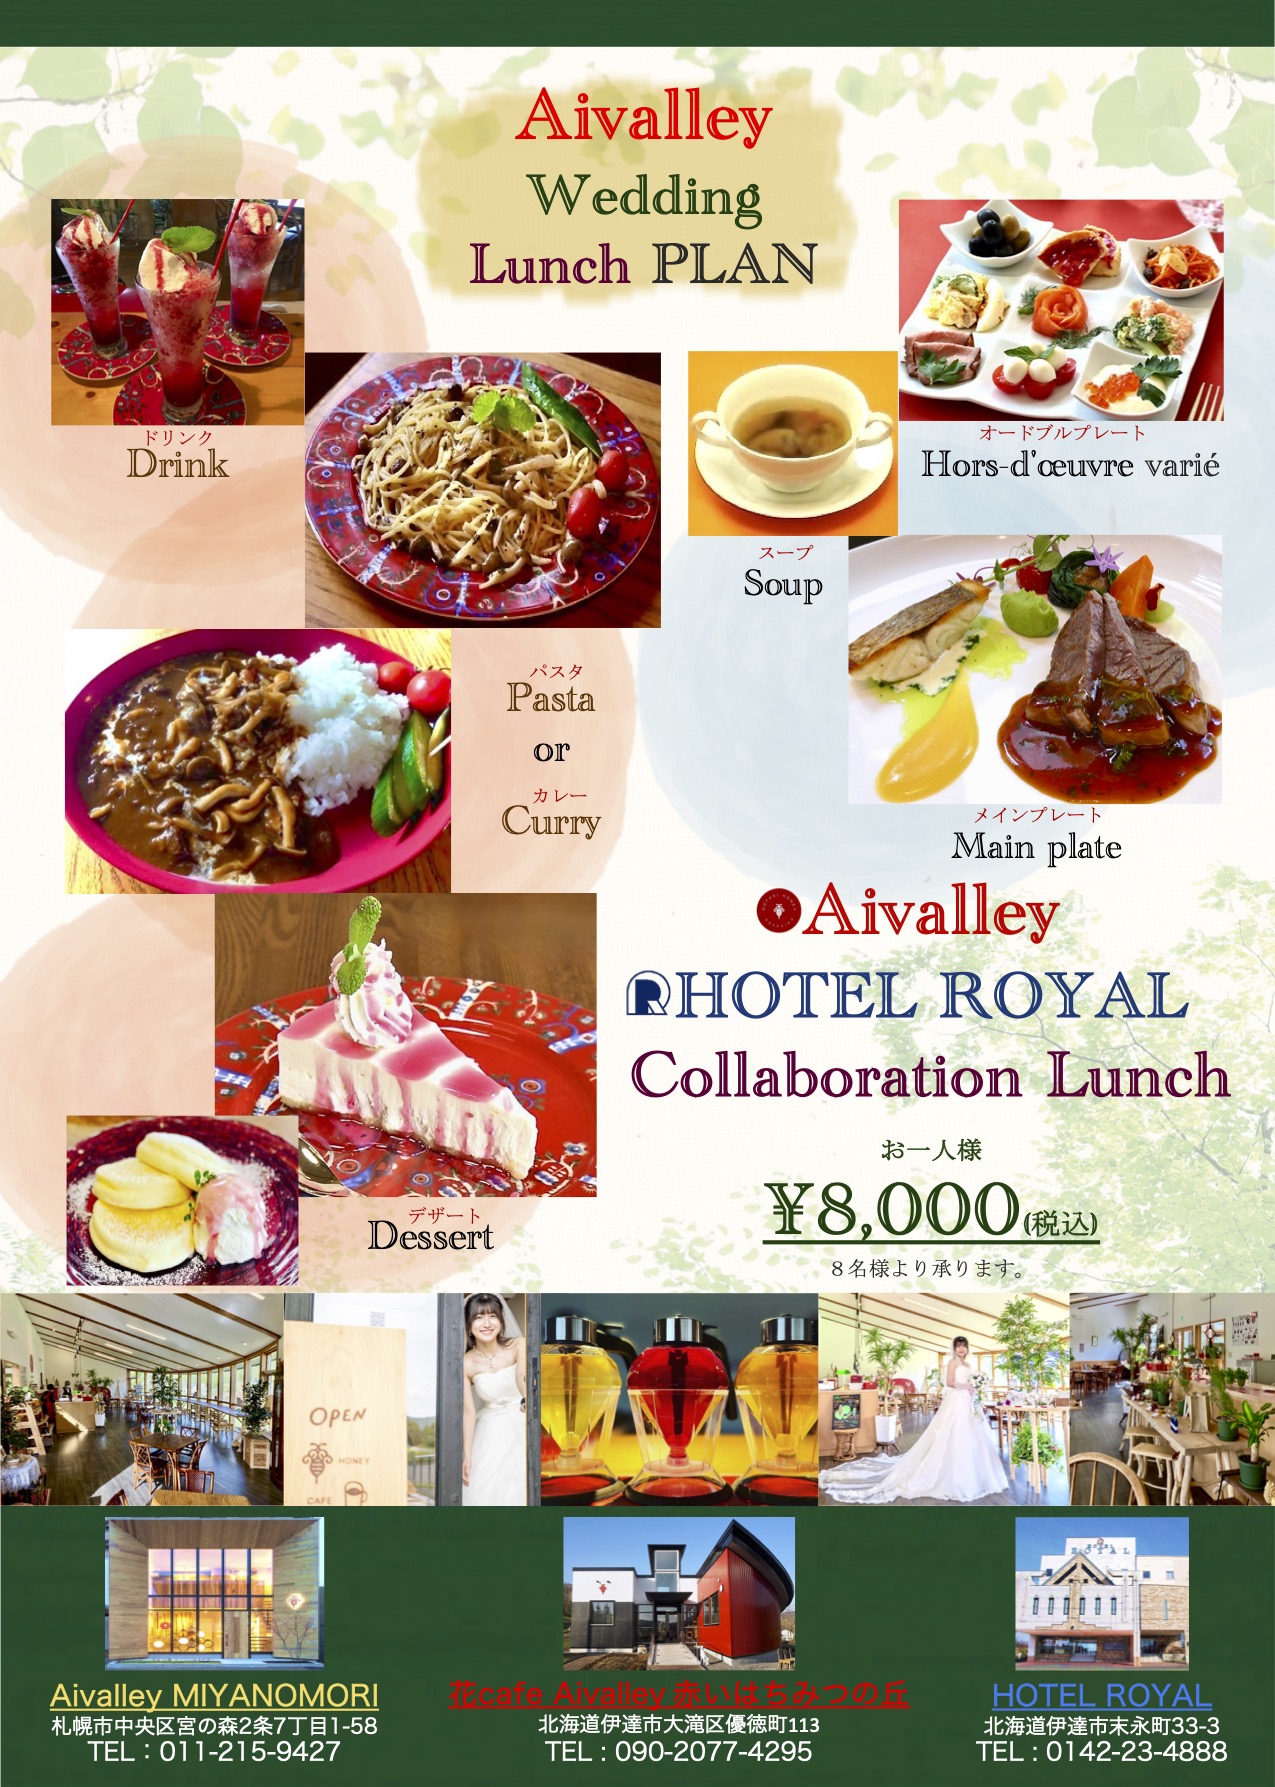 Aivalley Wedding Lunch PLAN［アイバレーウェディングランチプラン］